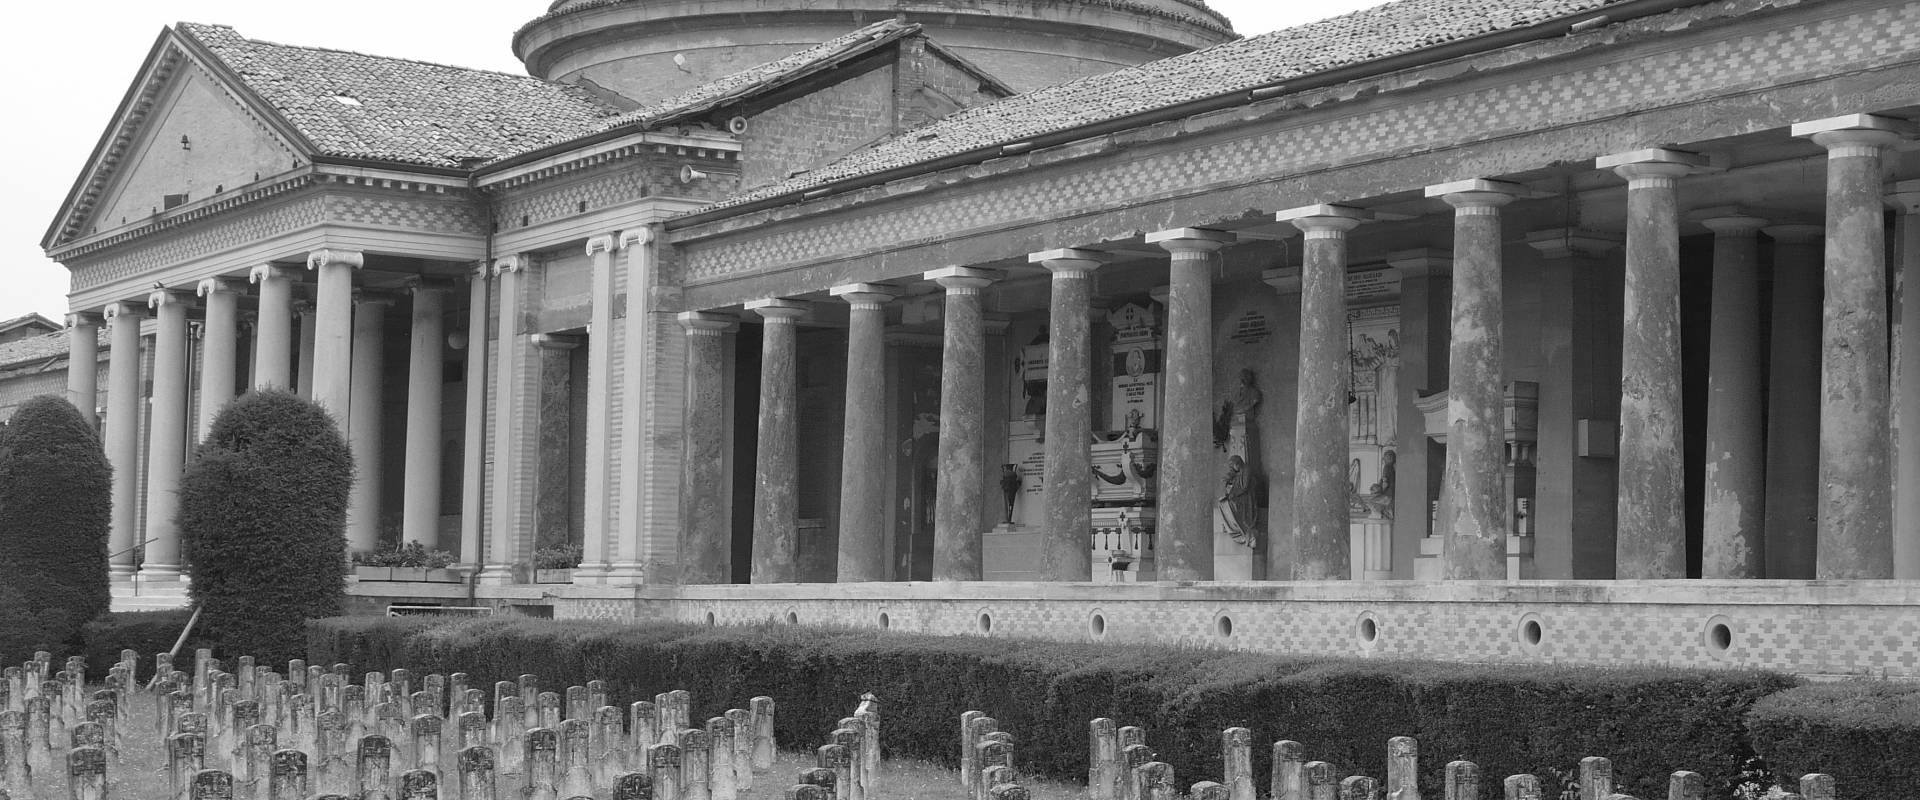 Cimitero Monumentale di Modena foto di Sergius08